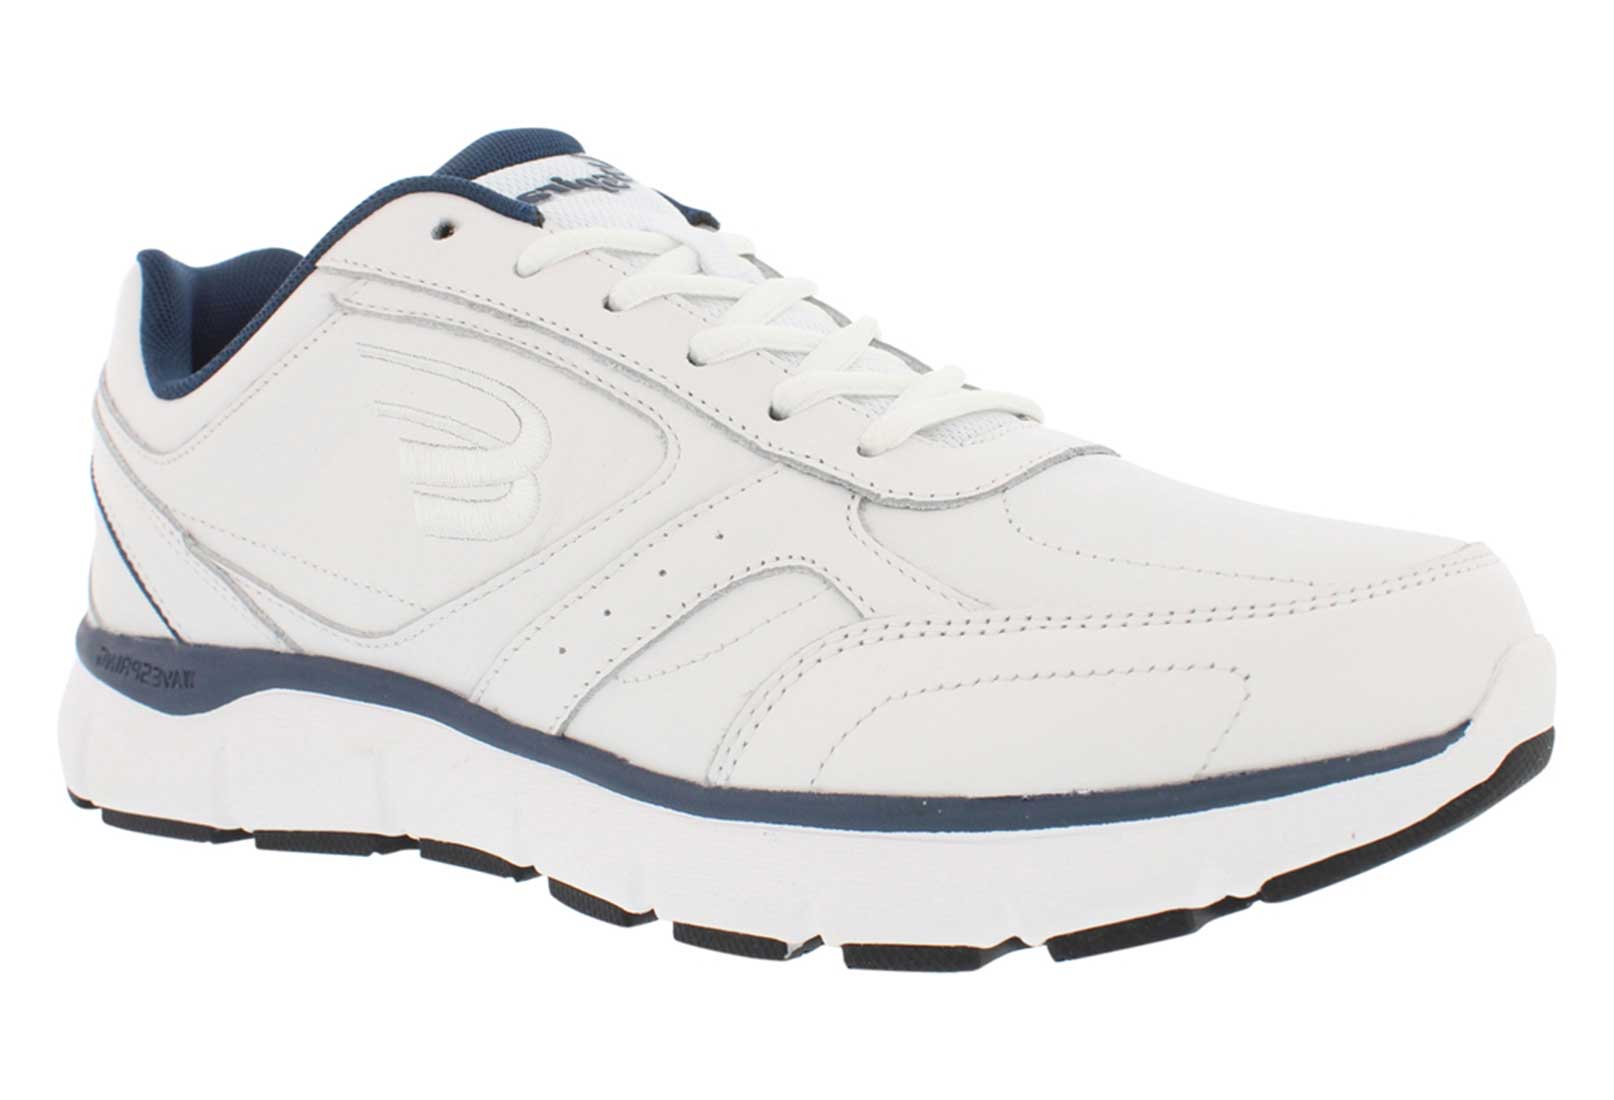 Spira Men's WaveWalker SWAV121 Walking Shoe - Men's Athletic Extra ...